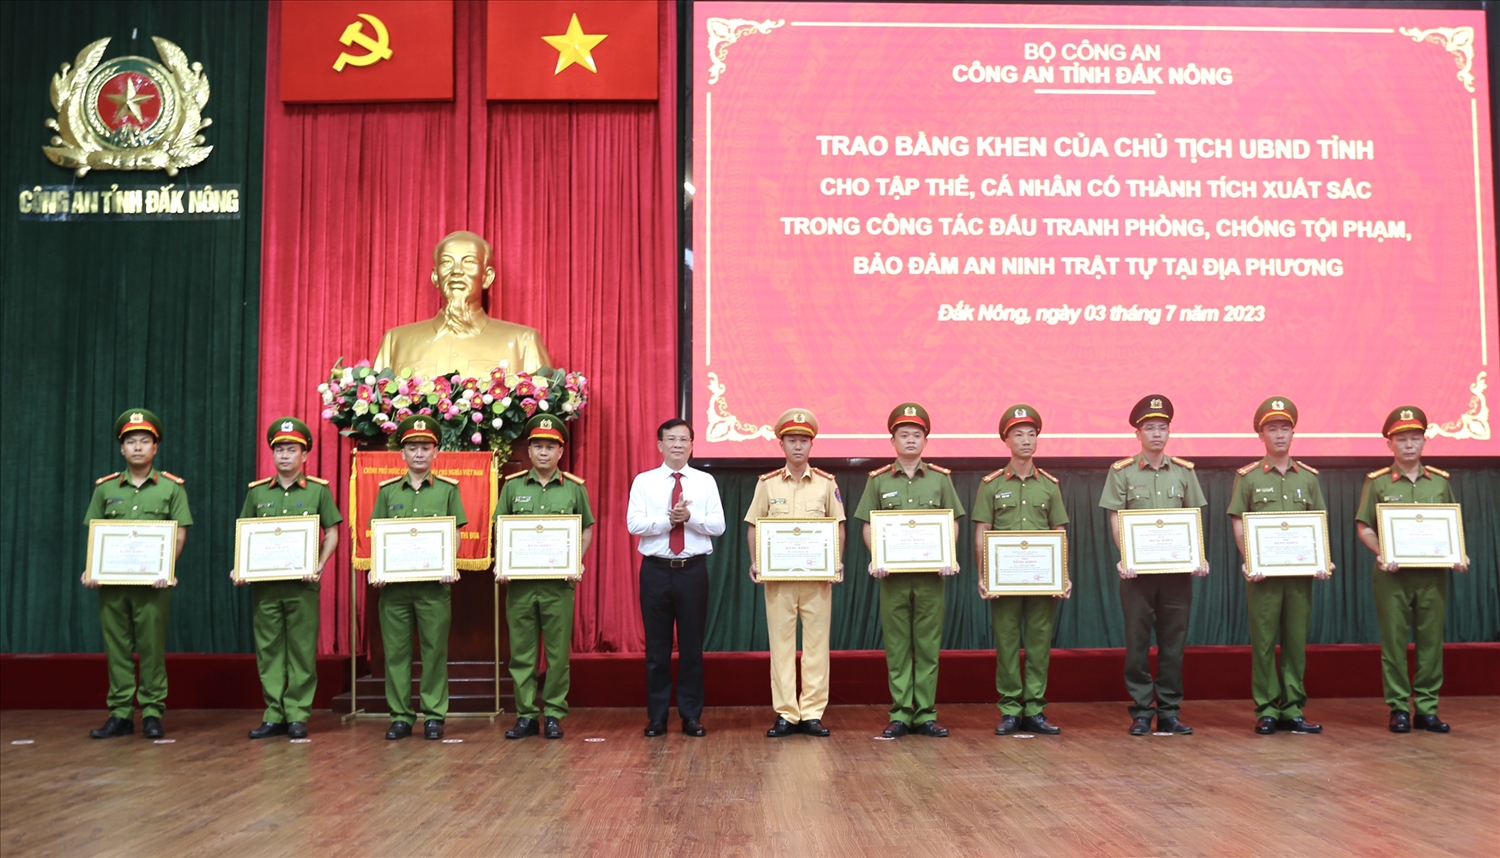 Phó Bí thư Tỉnh ủy, Chủ tịch UBND tỉnh Đắk Nông Hồ Văn Mười trao Bằng khen cho các tập thể, cá nhân